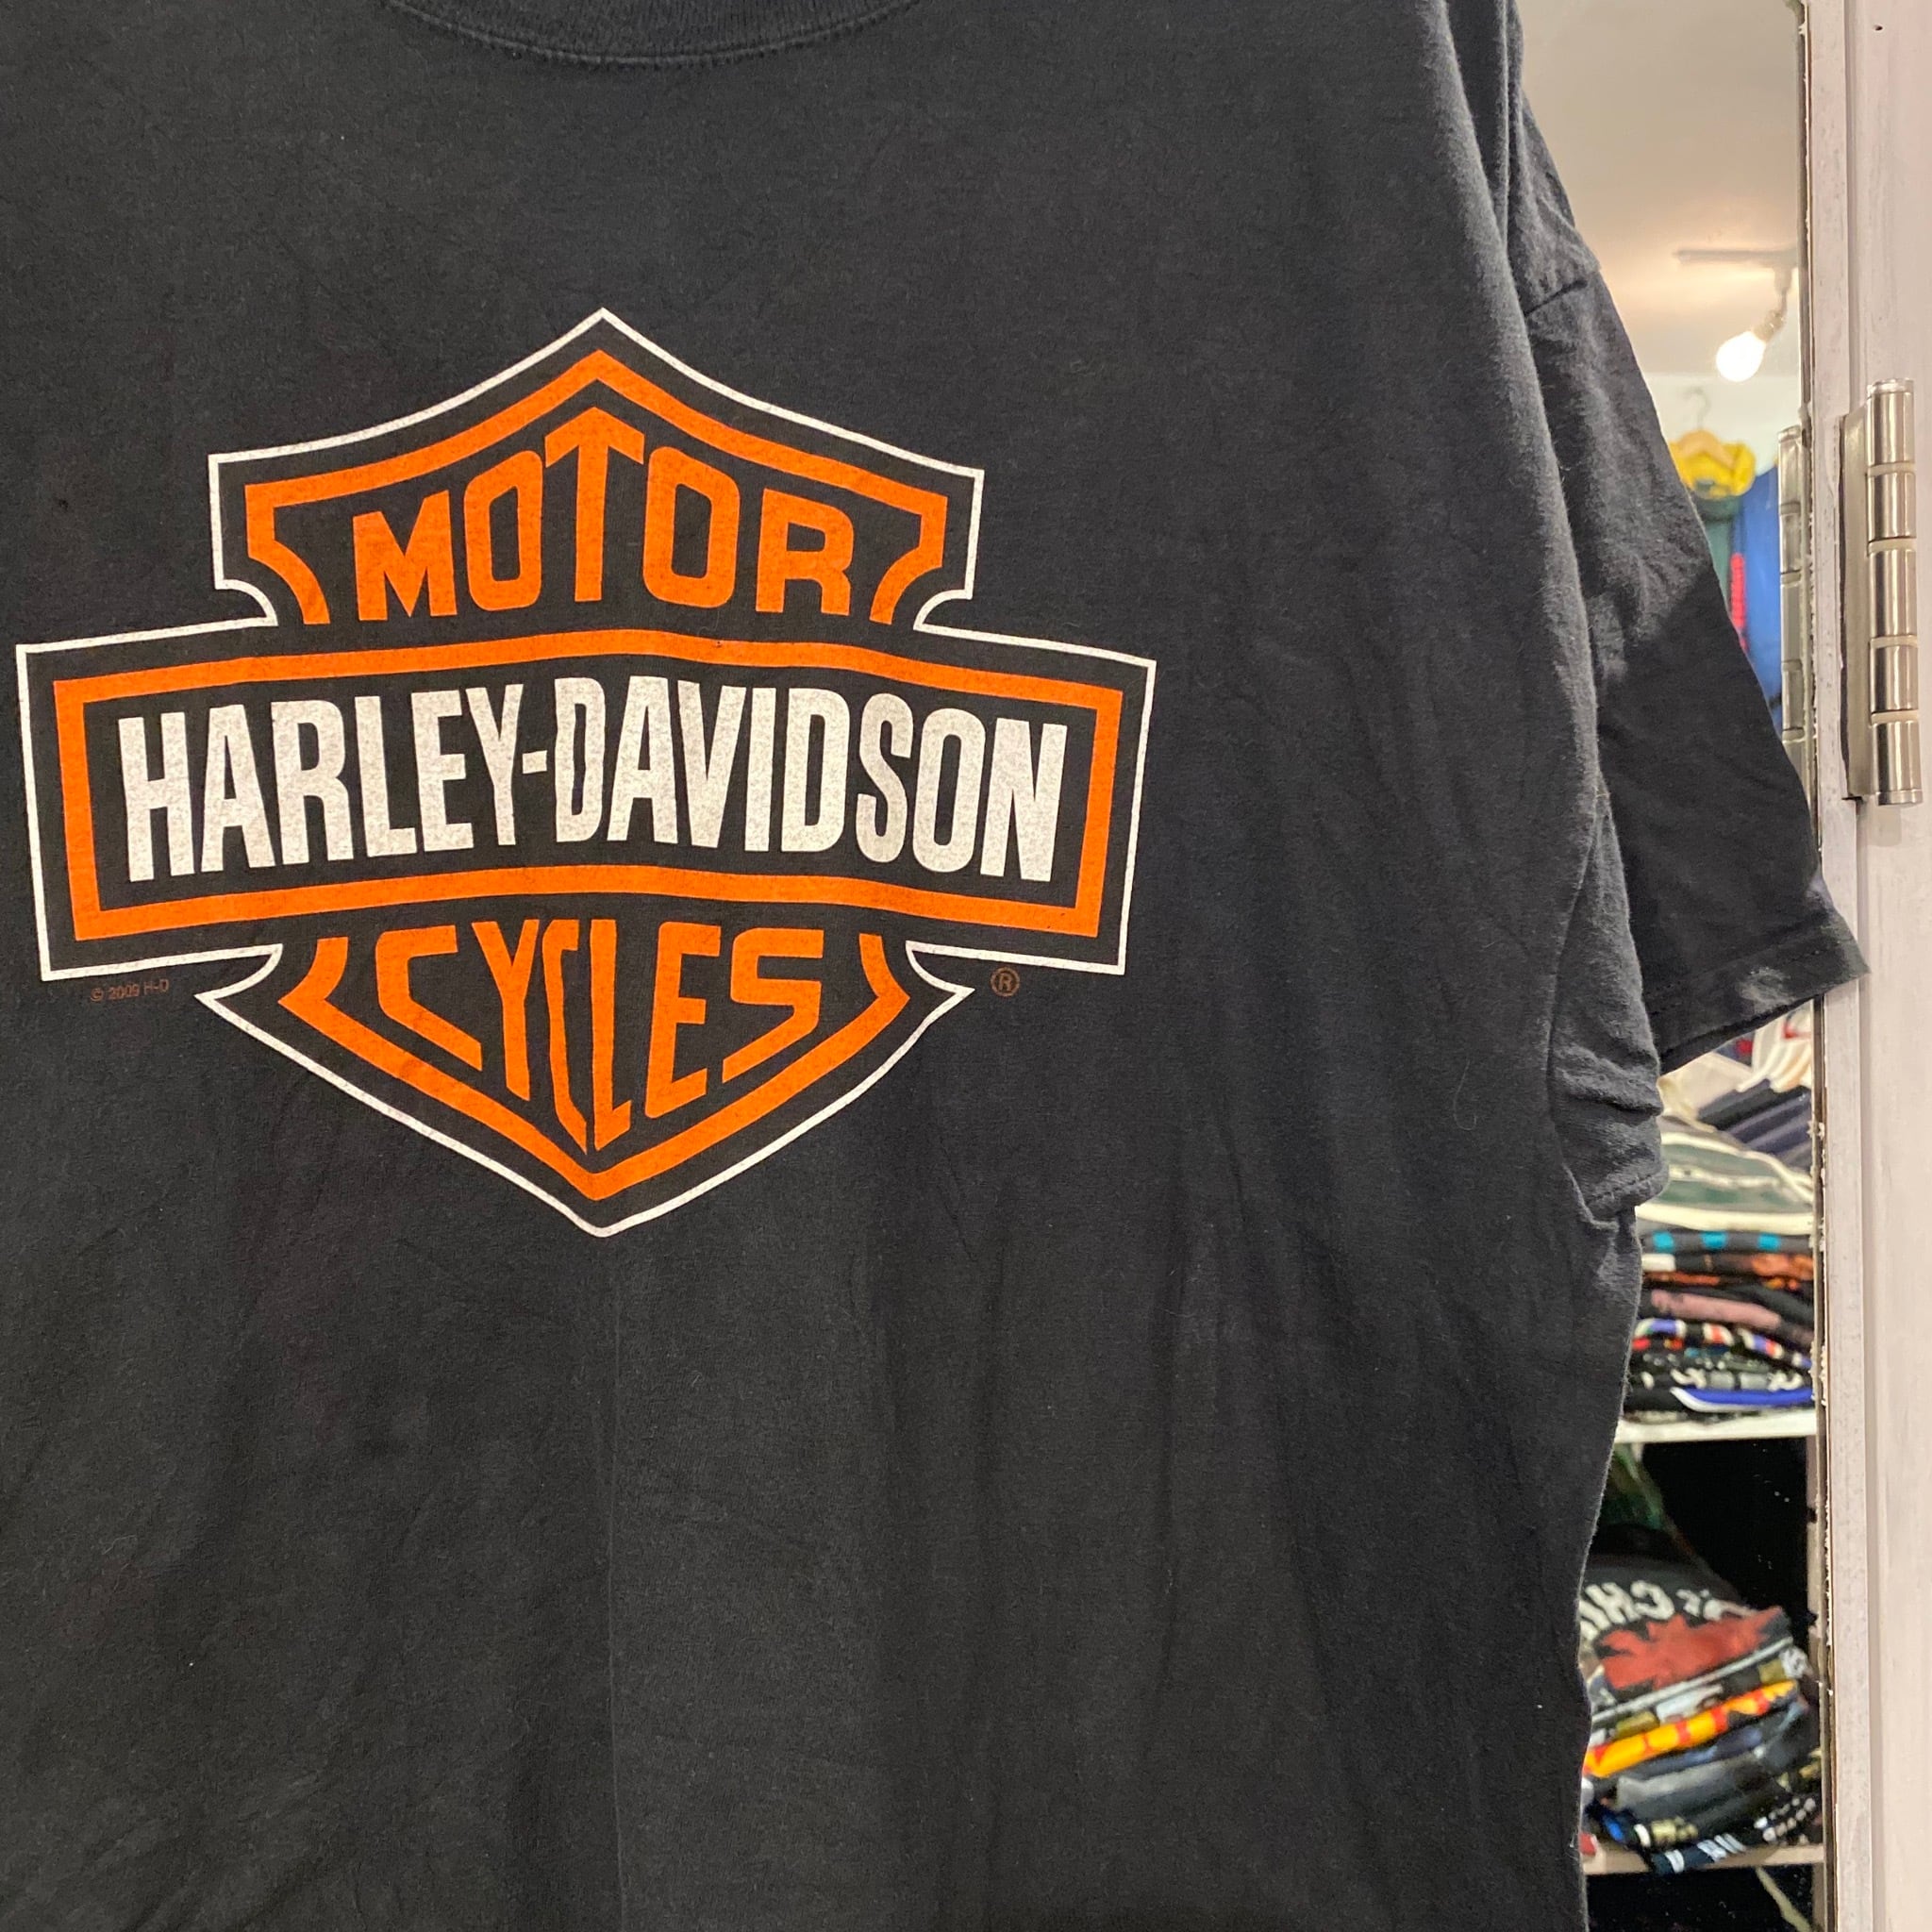 USED ハーレーダビッドソン Tシャツ   new&usedclothing